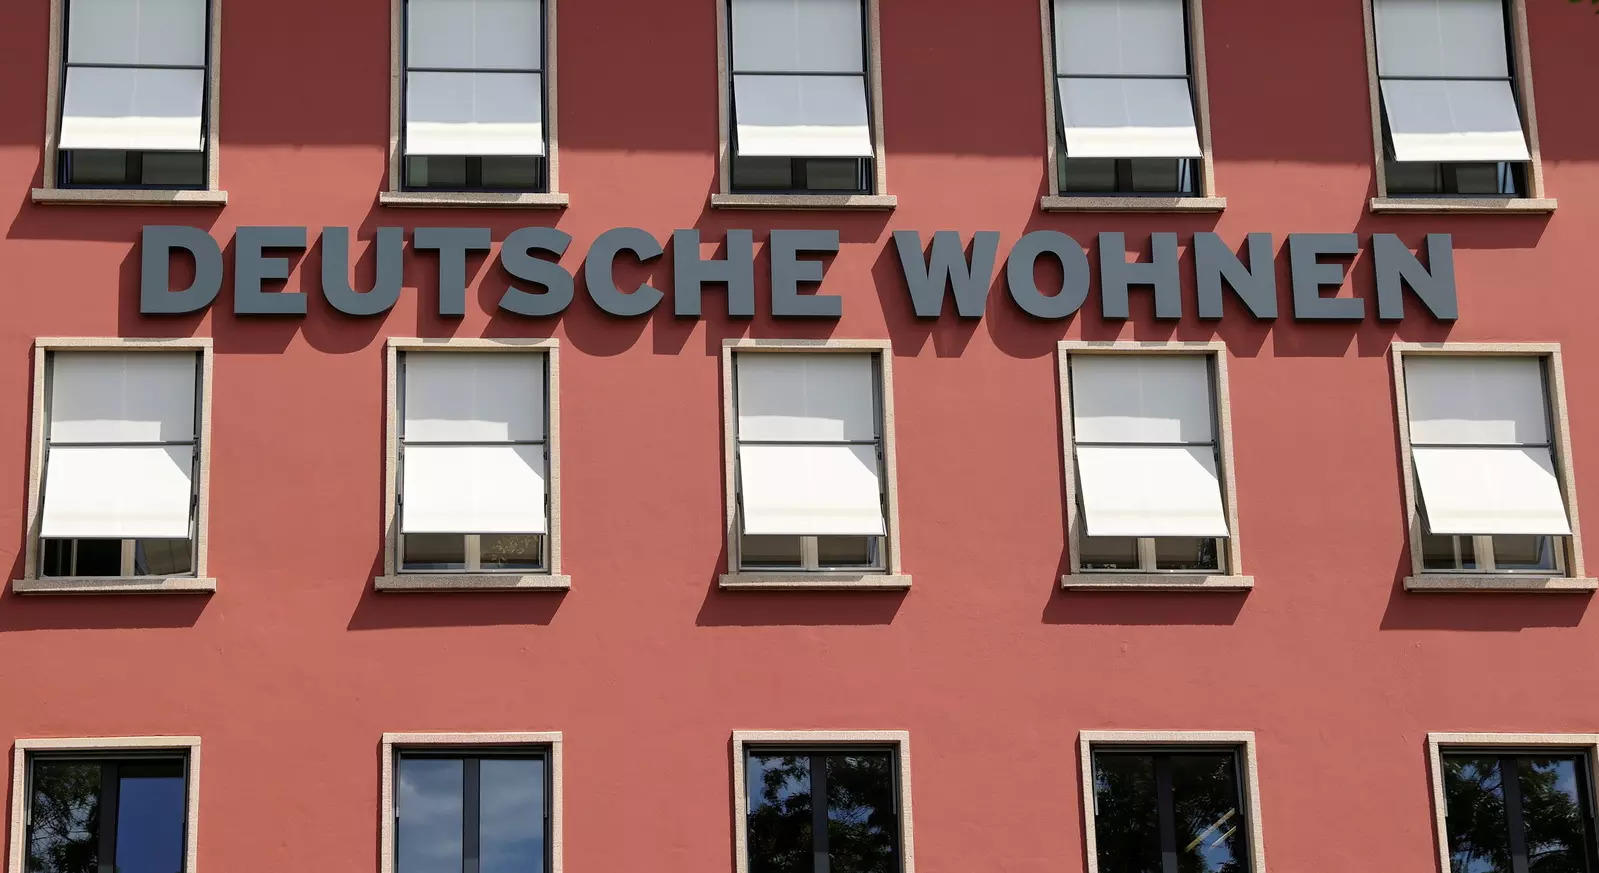 Vonovia to make new Deutsche Wohnen offer valuing it at $22.7 billion